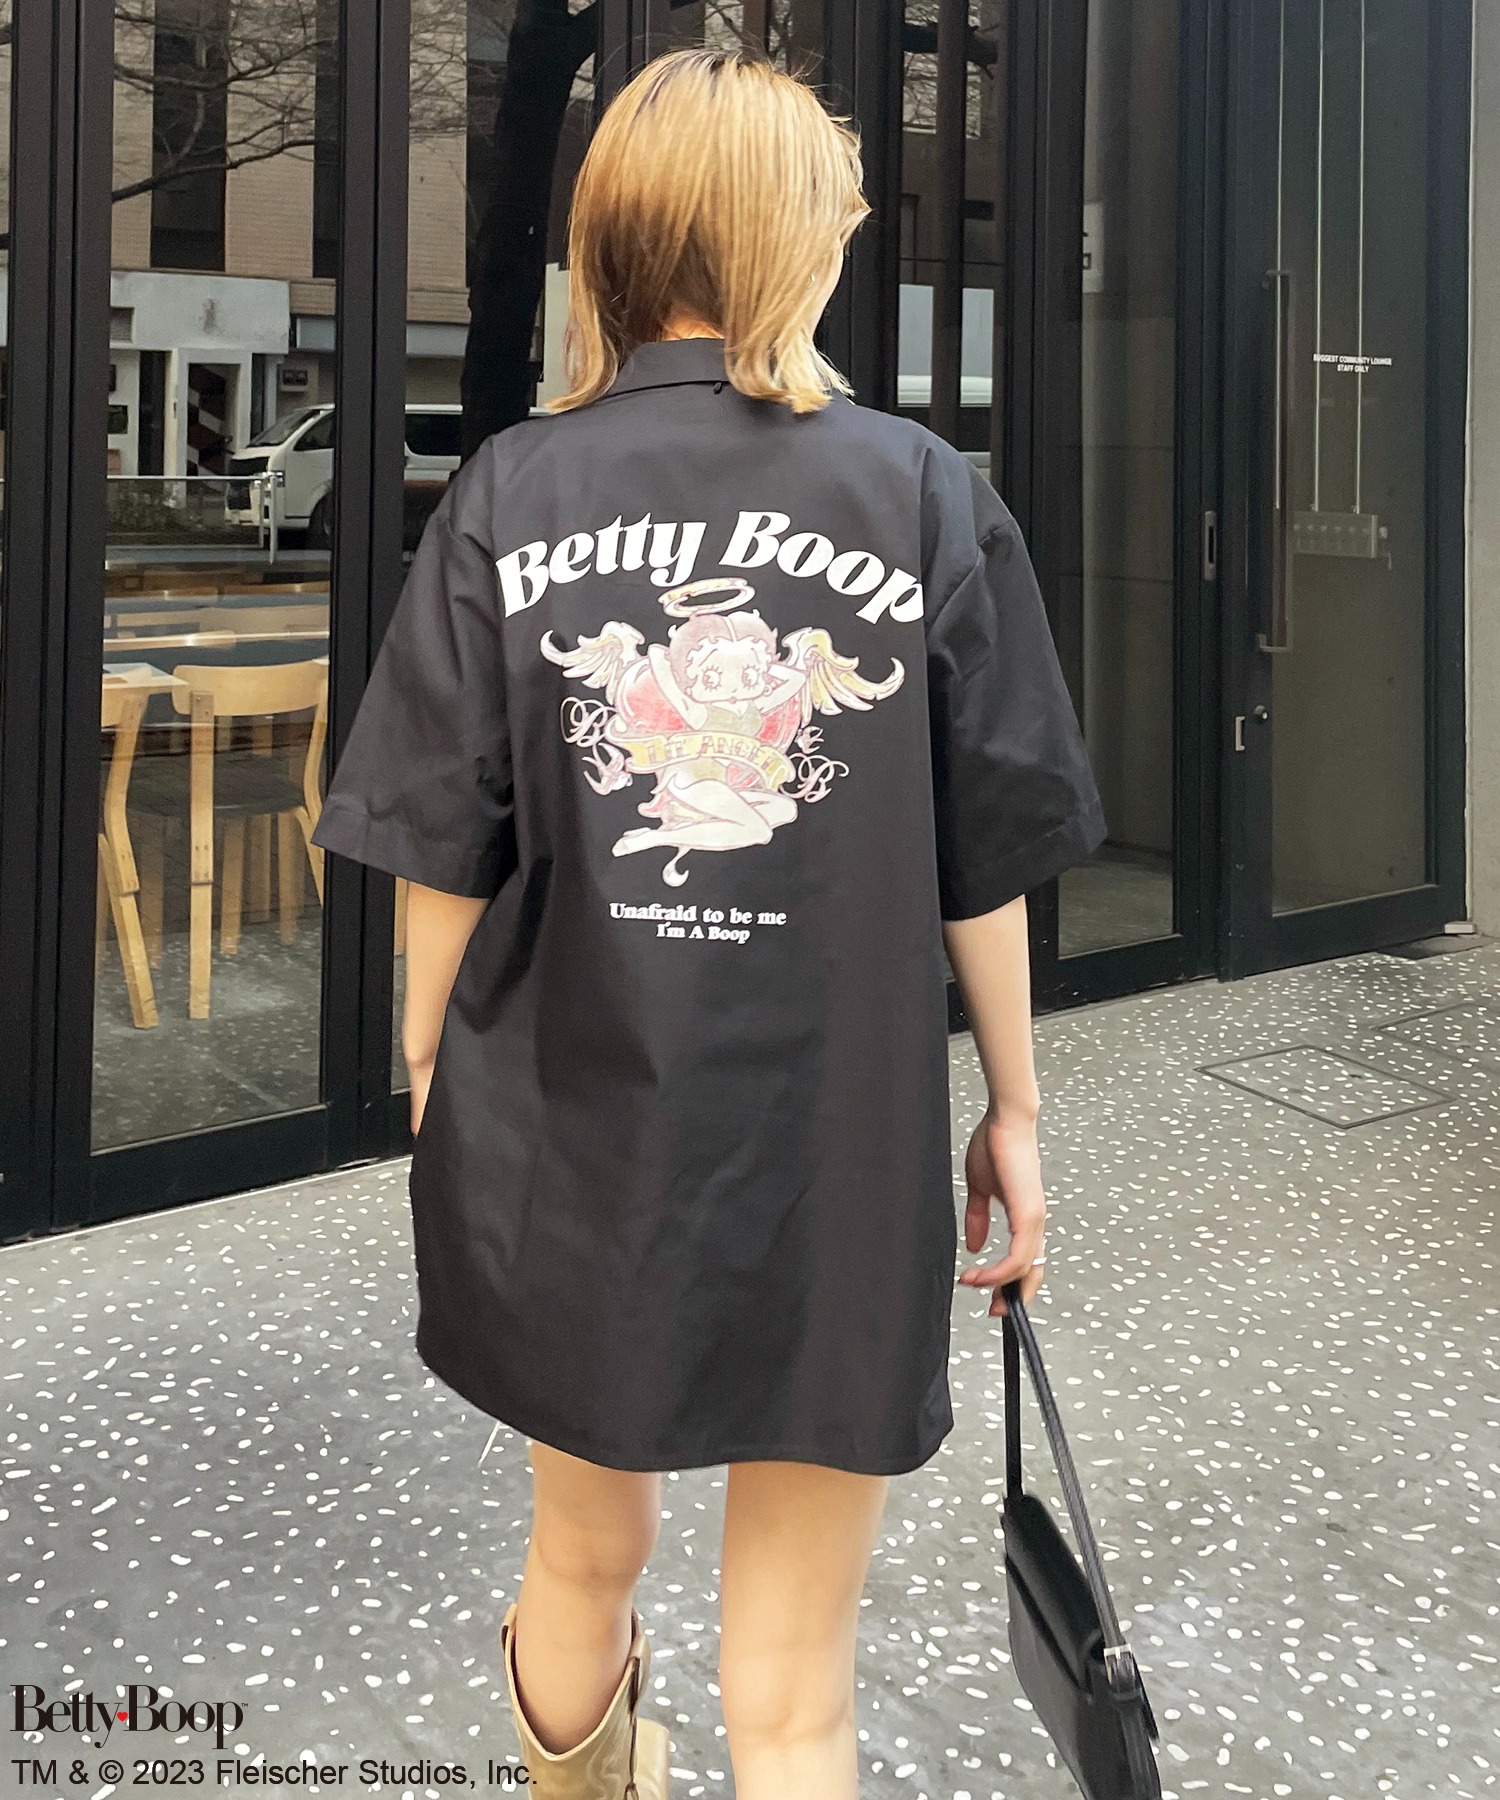 BETTY BOOP(TM)】タトゥーアートオープンカラーシャツ 4GEEKs by ...